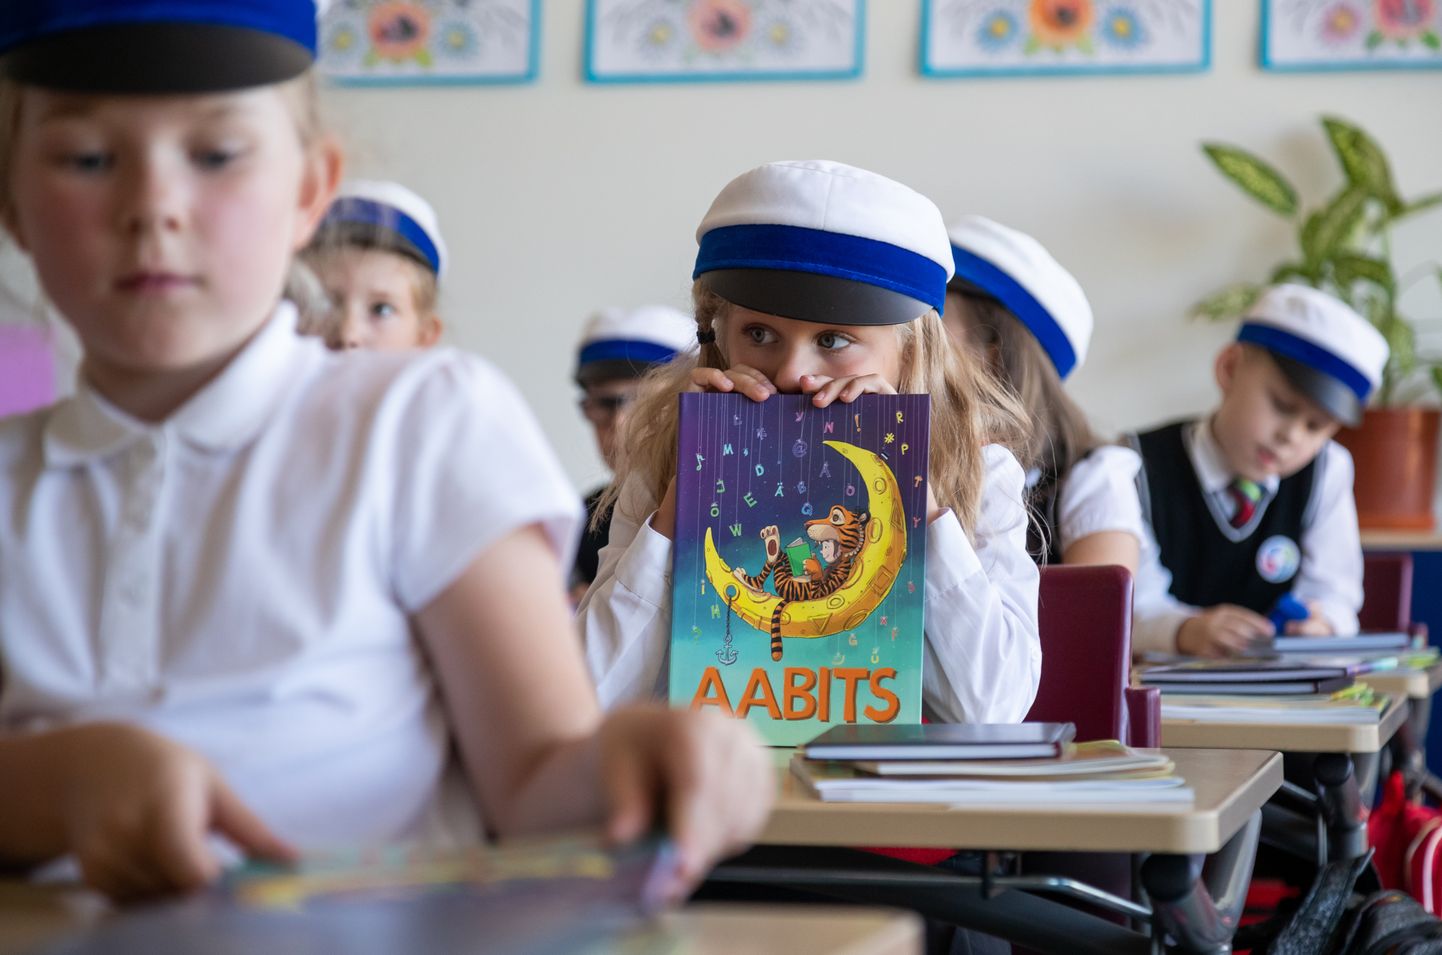 Tallinna linnavõim kinnitab 2020. aasta koolieelse eralasteasutuse toetuseks 187 eurot kuus ühe lapse kohta, mullu oli toetuse summaks 173,50 eurot.